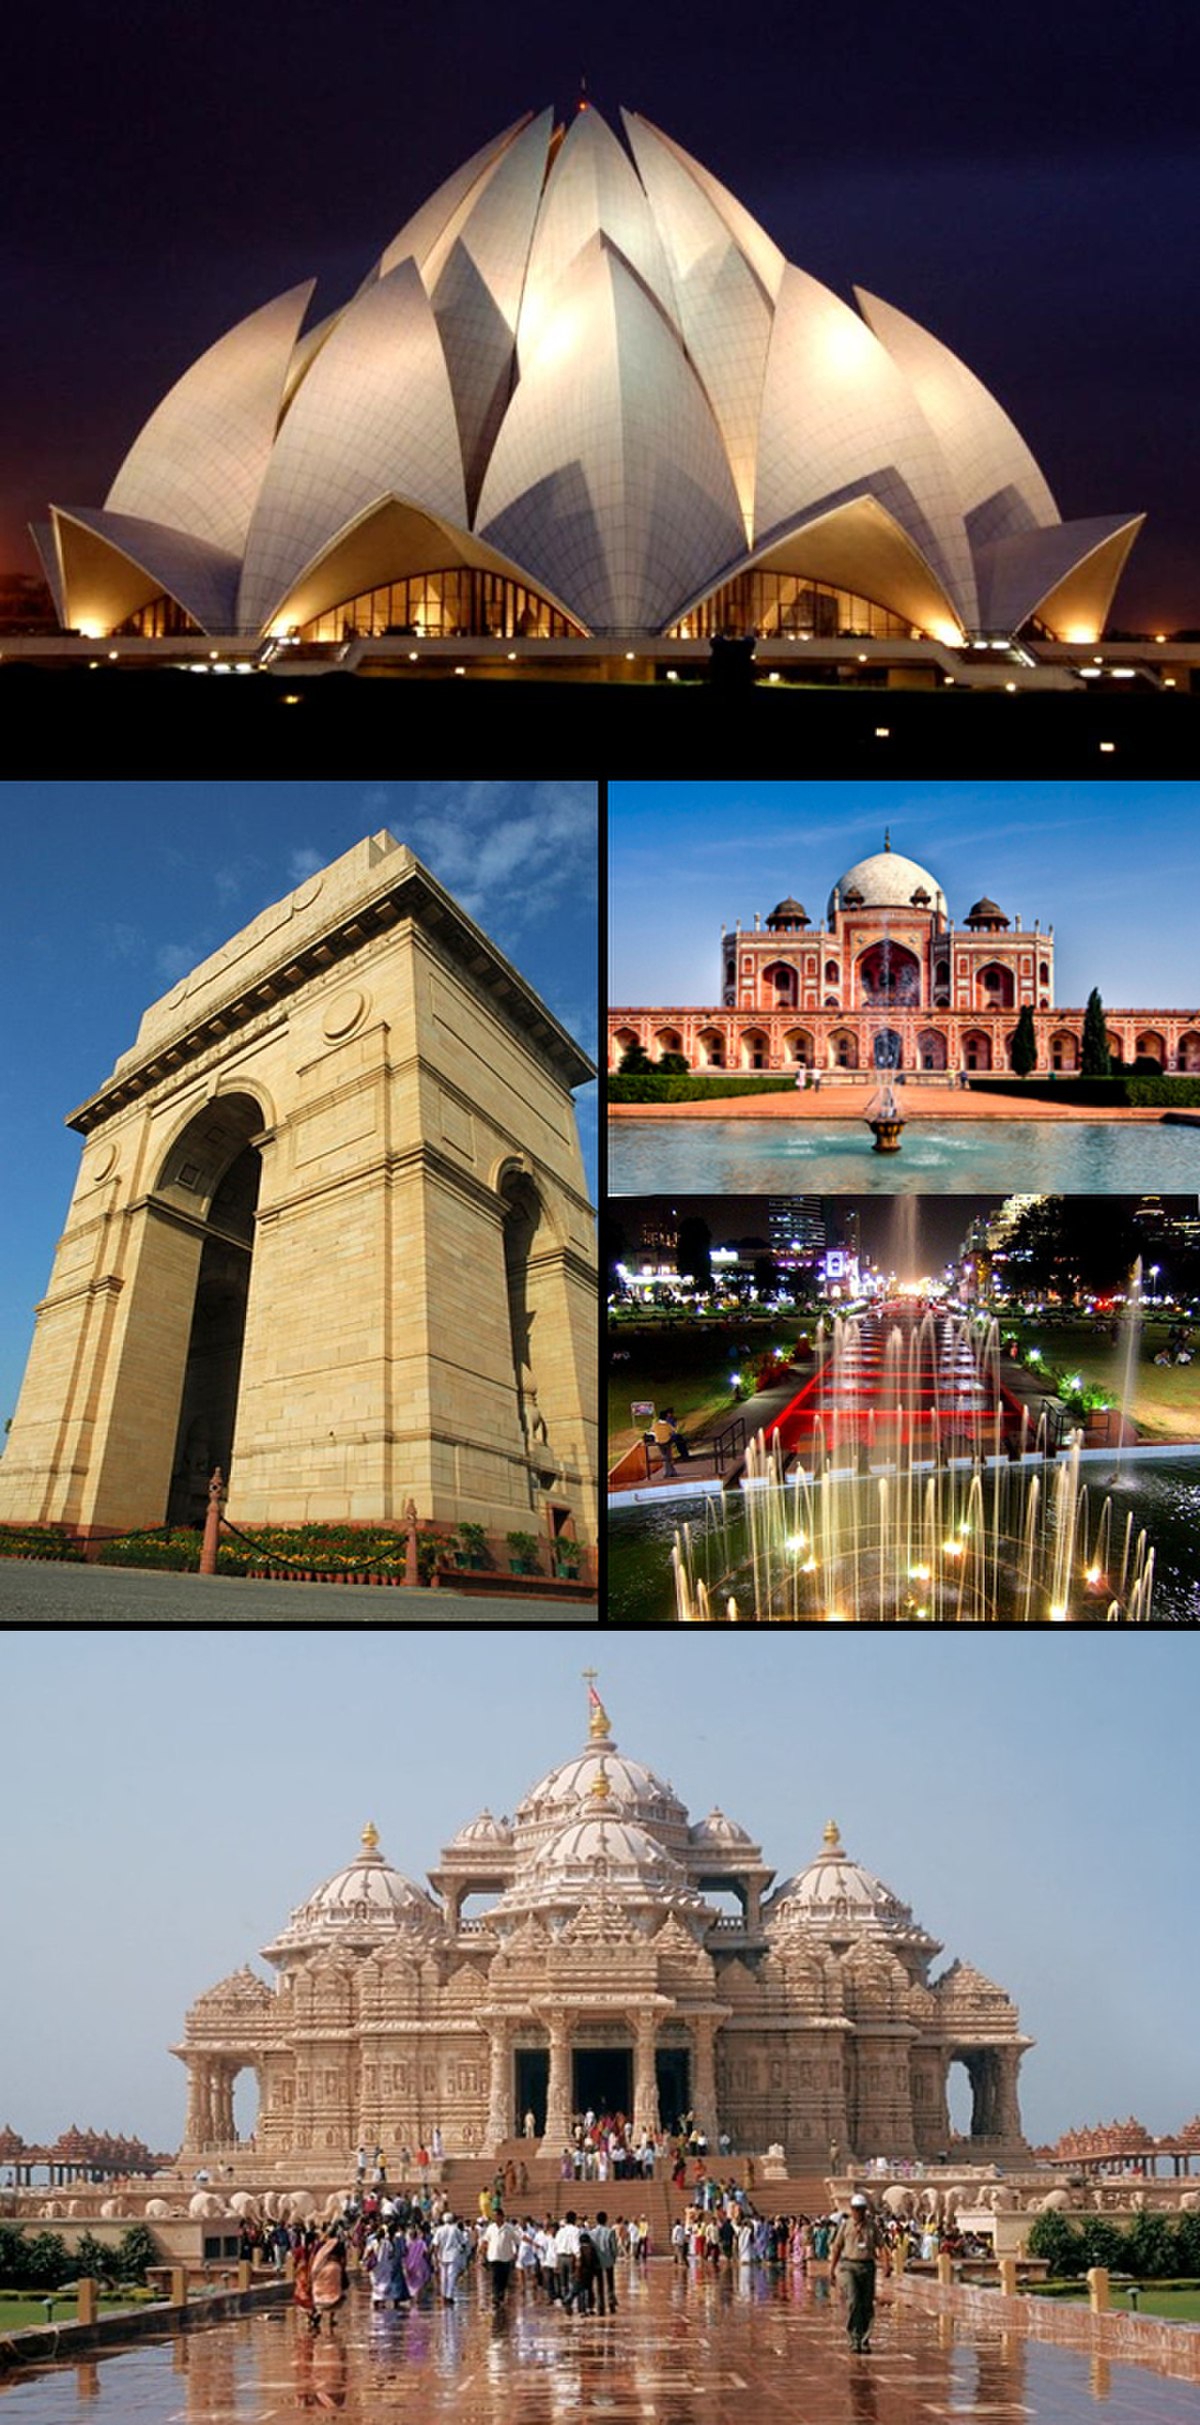 Points d'intérêt de New Delhi - De gauche à droite, depuis le haut : 1) Temple du Lotus ; 2) Porte de l'Inde ; 3) Tombe de Humayun ; 4) Connaught Place ; 5) Temple Akshardham